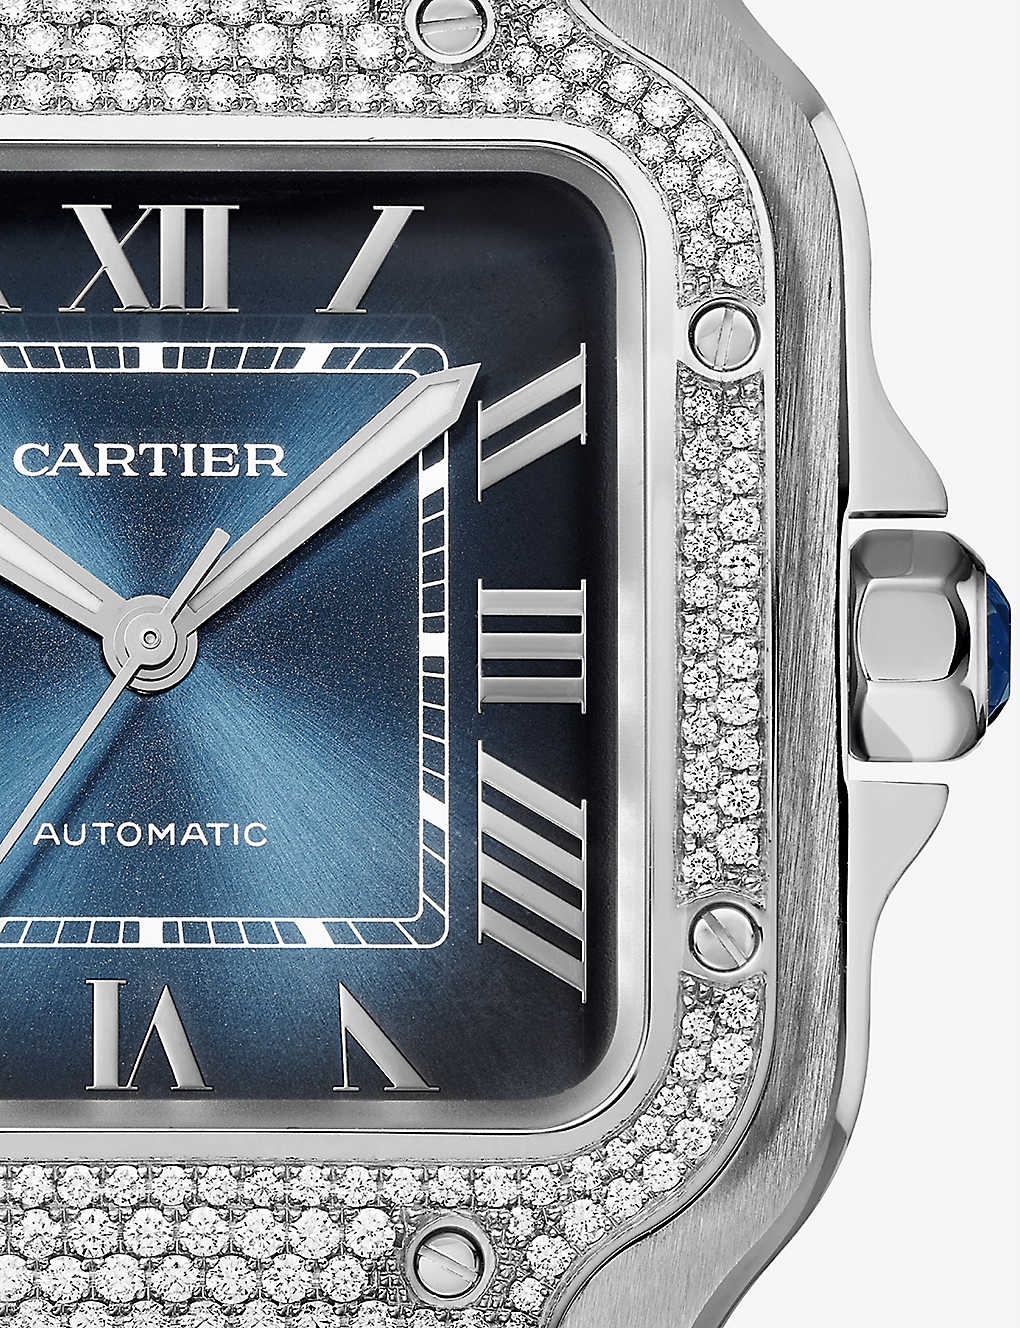 Santos de Cartier mechanical watch - 3